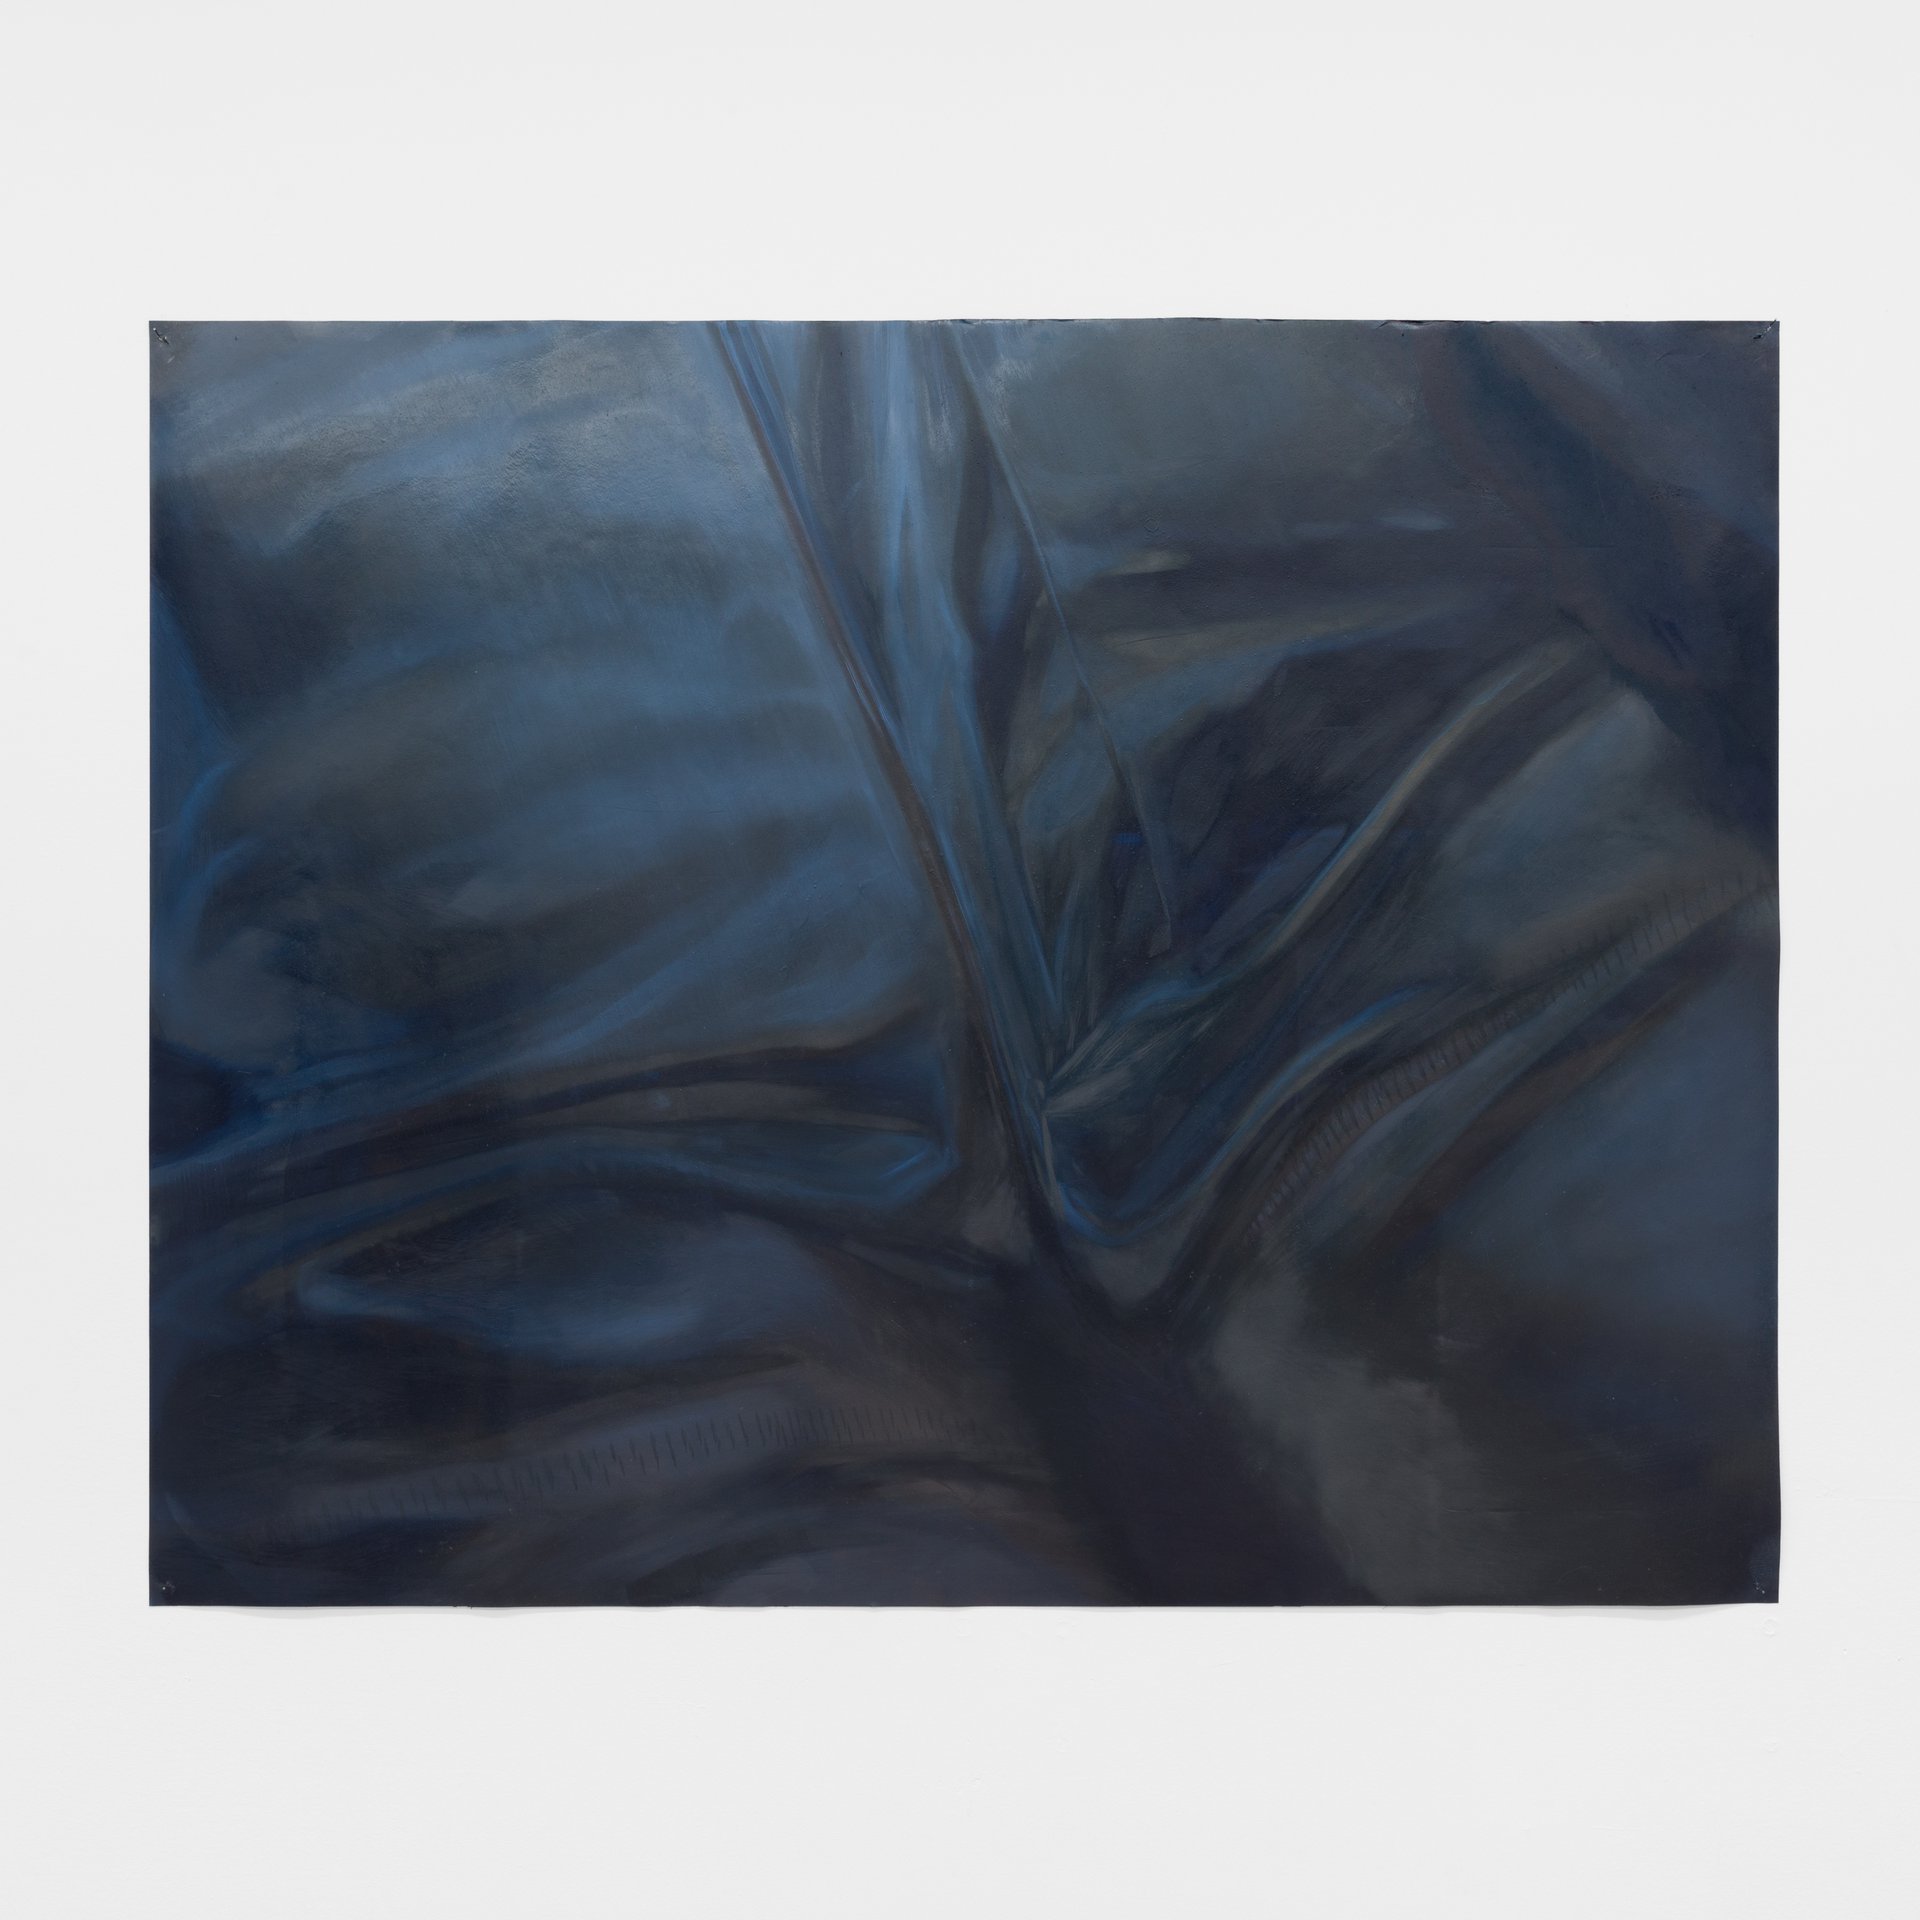 Evelyn PlaschgCrotch II, 2023Oil on canvas99 x 127 cm